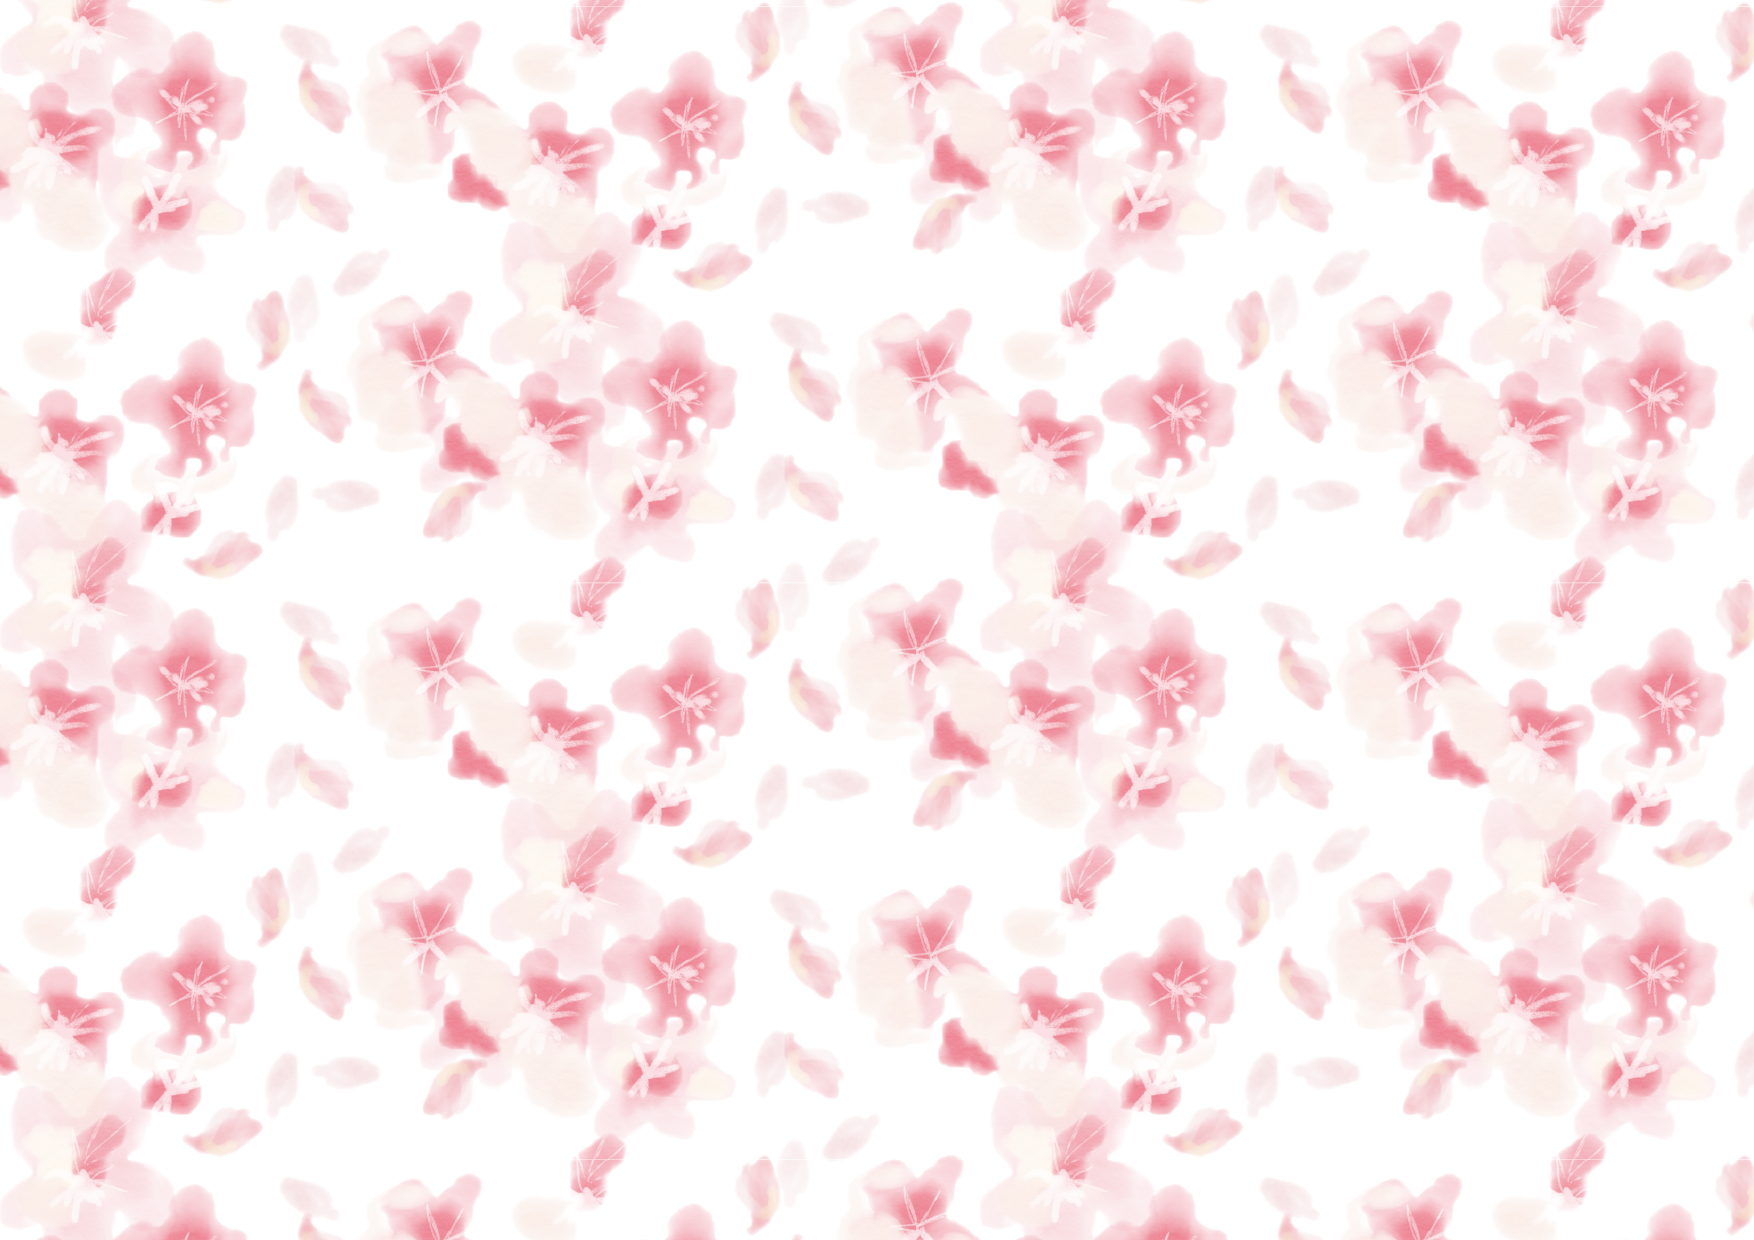 可愛いイラスト無料 背景 水彩 桜吹雪 公式 イラスト素材サイト イラストダウンロード